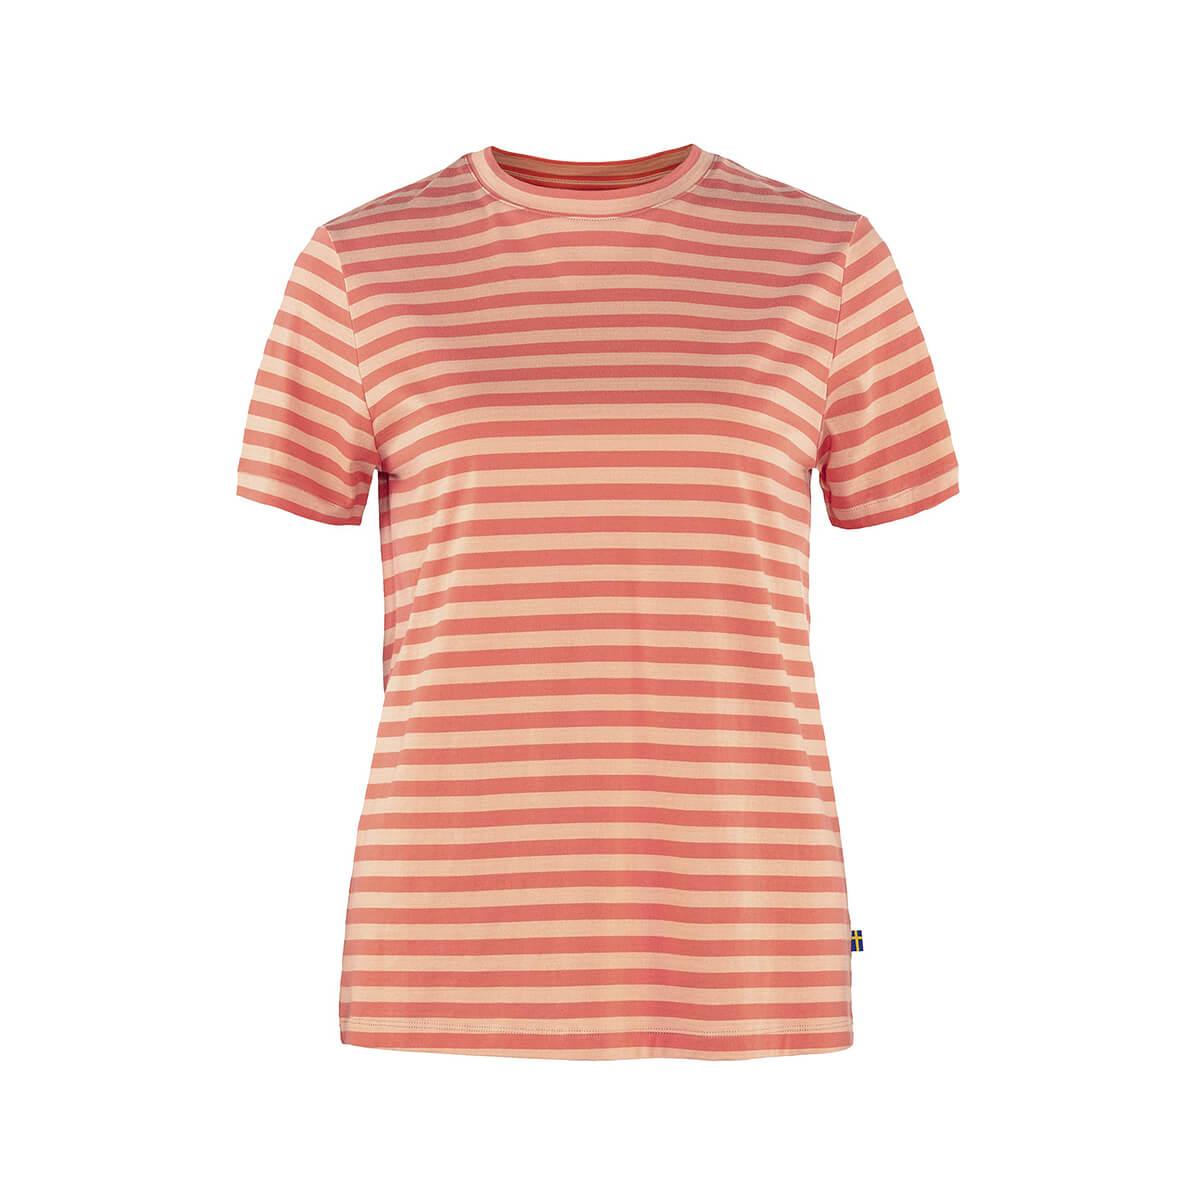  Women's Short Sleeve Striped T- Shirt